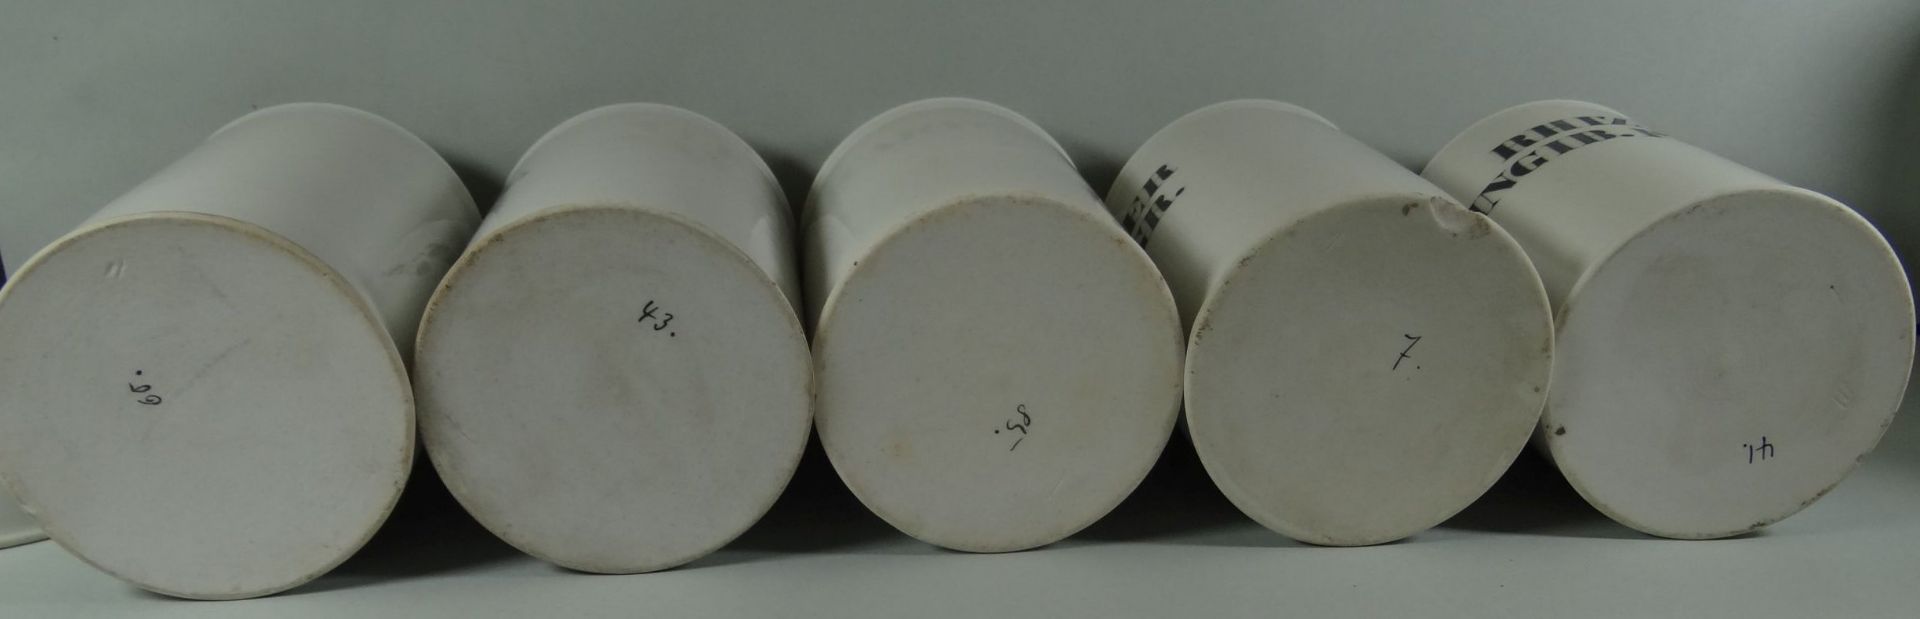 13x Apothekengefässe, lateinisch beschriftet, H-14 cm, D-8 cm, 2x am Stand mit Chip, - Bild 7 aus 7